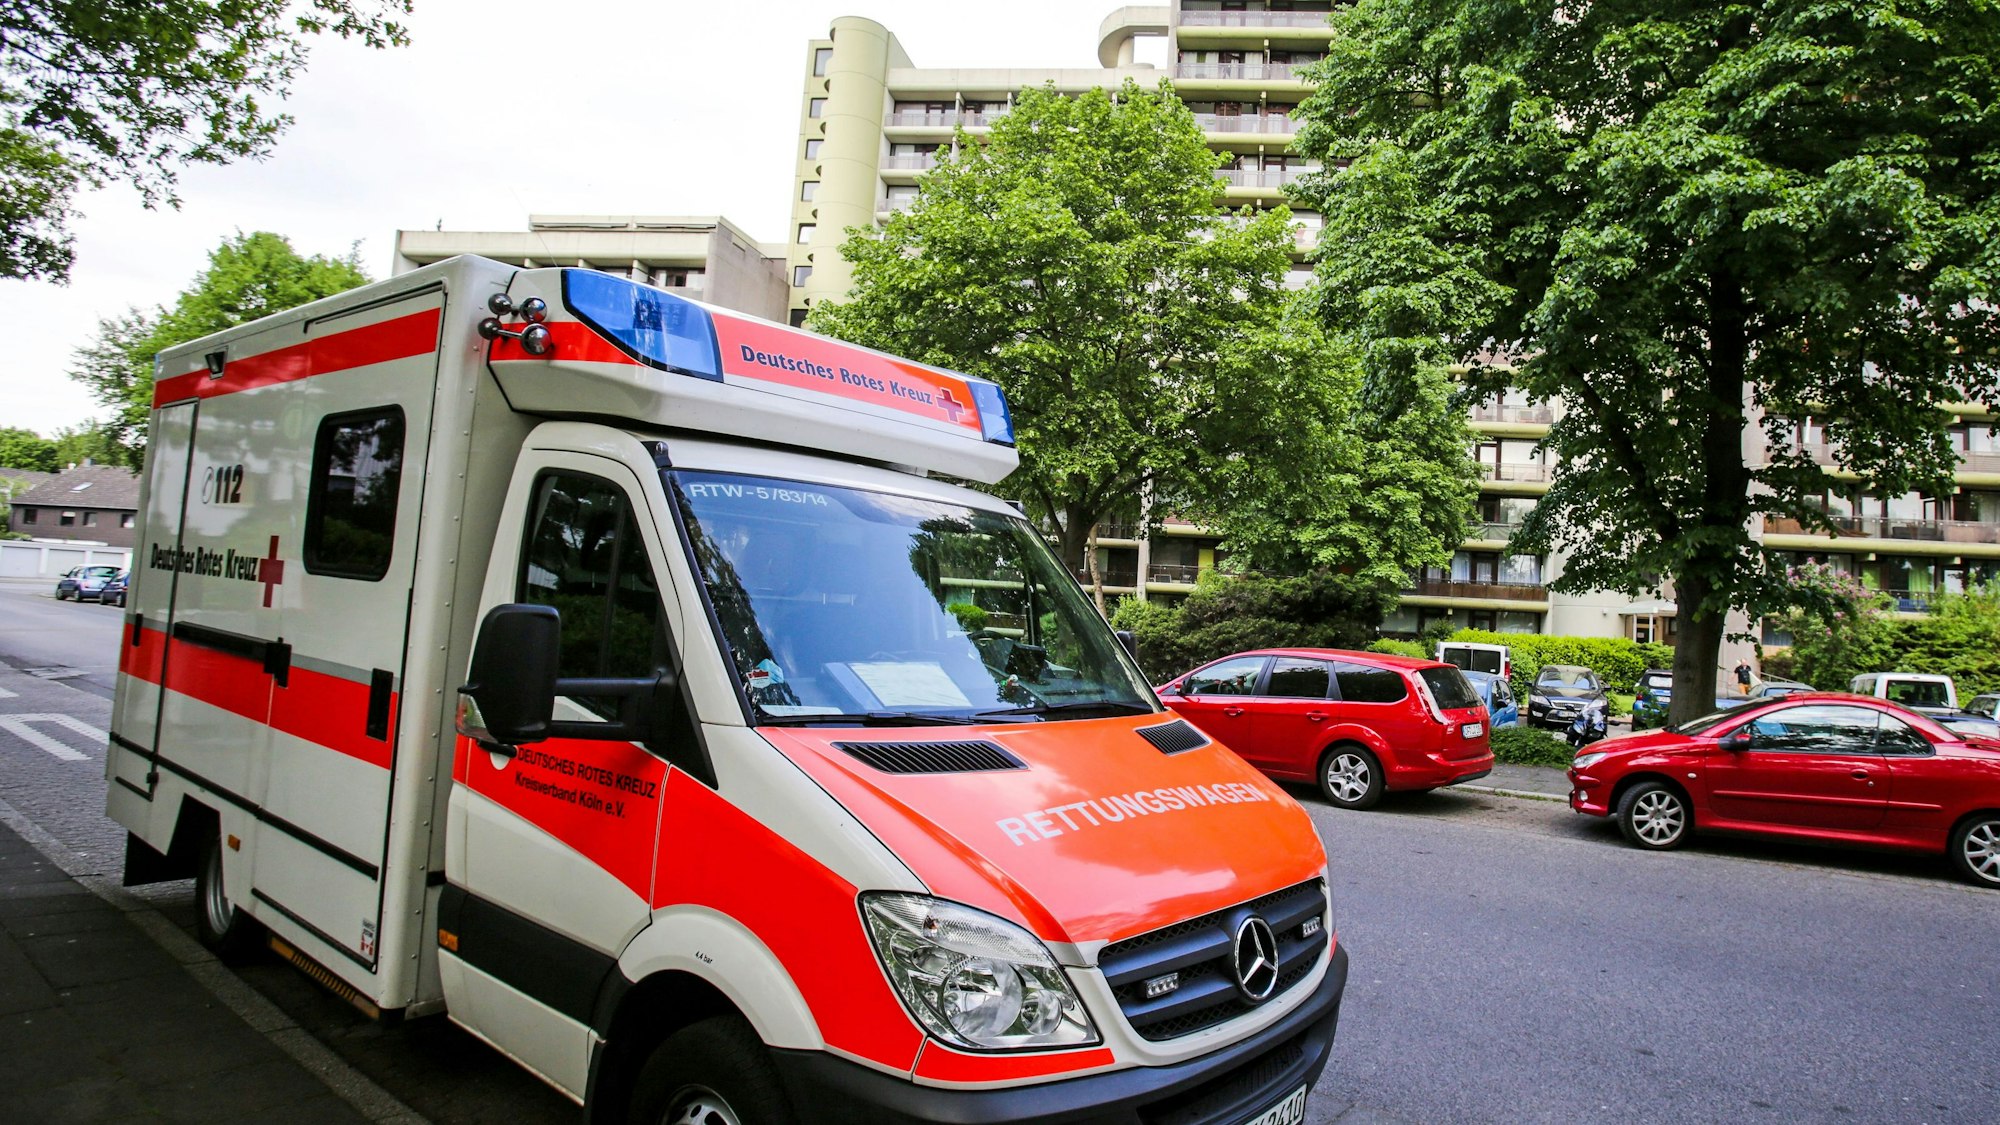 Ein Rettungswagen (RTW) des Deutschen Roten Kreuz (DRK) steht vor einem Wohnhaus am Wiener Weg  in Köln.